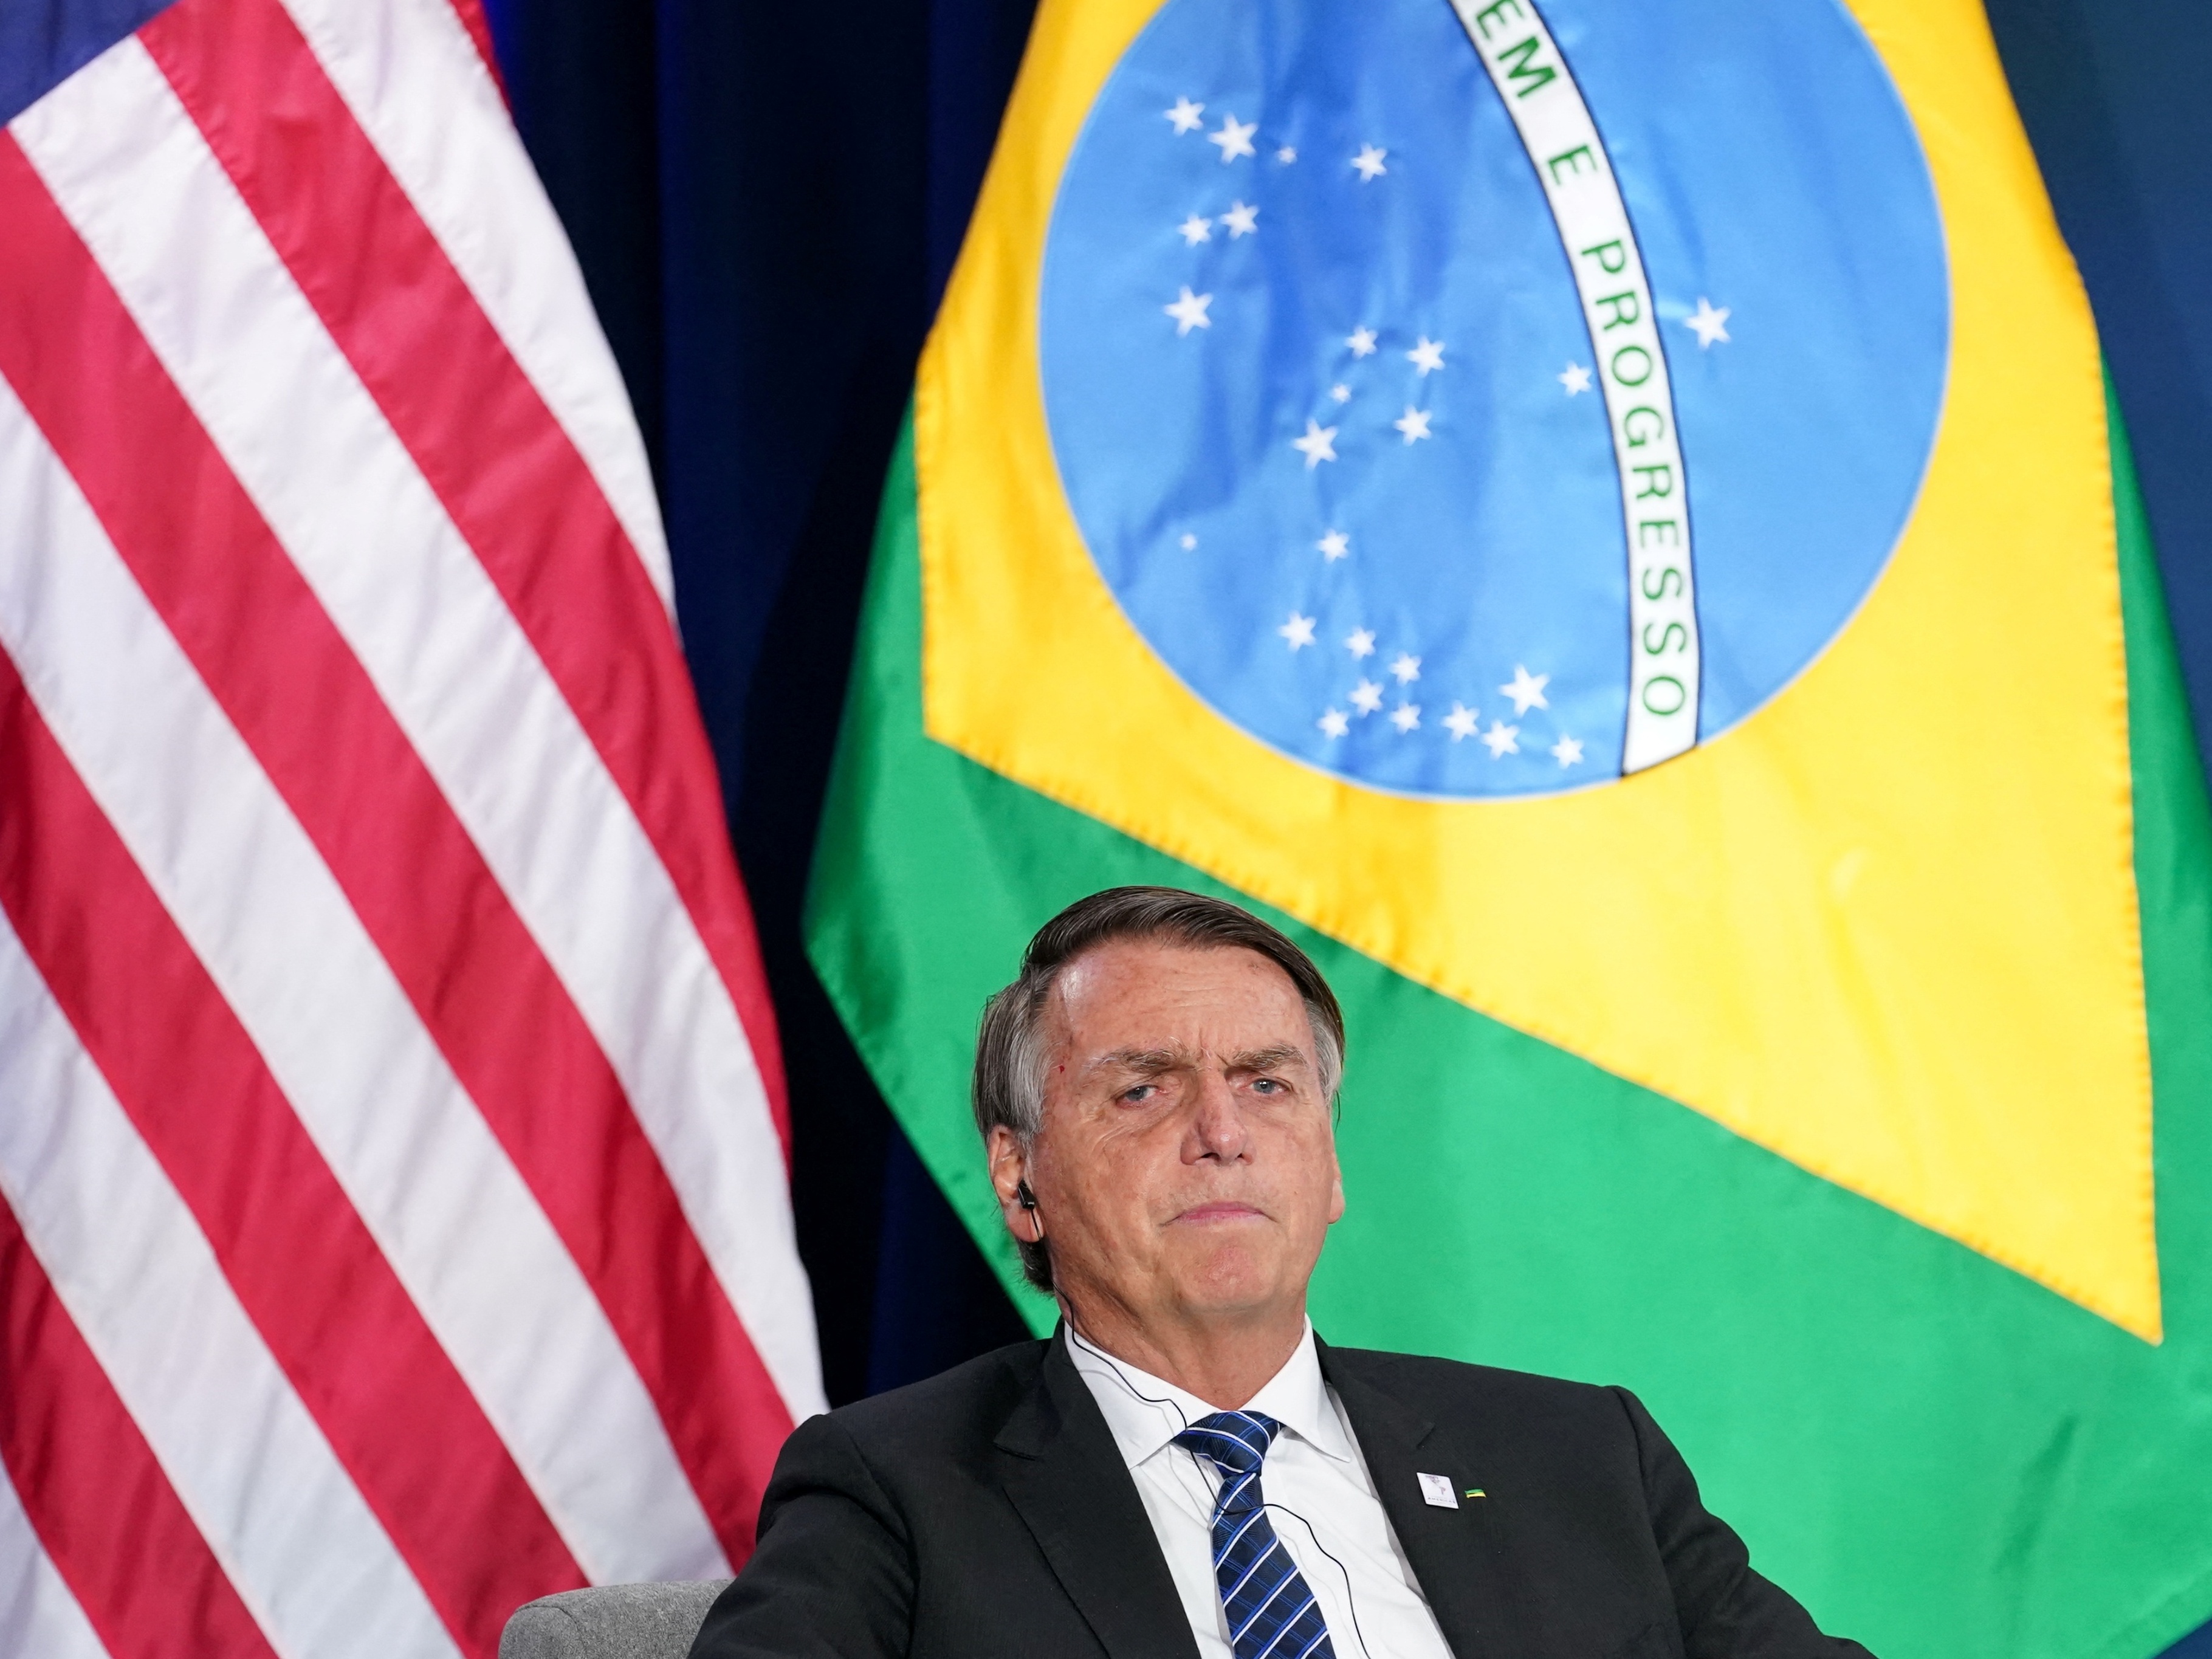 Brasil não conseguiu compromisso dos EUA para retirar barreiras comerciais  - 13/06/2022 - UOL Notícias